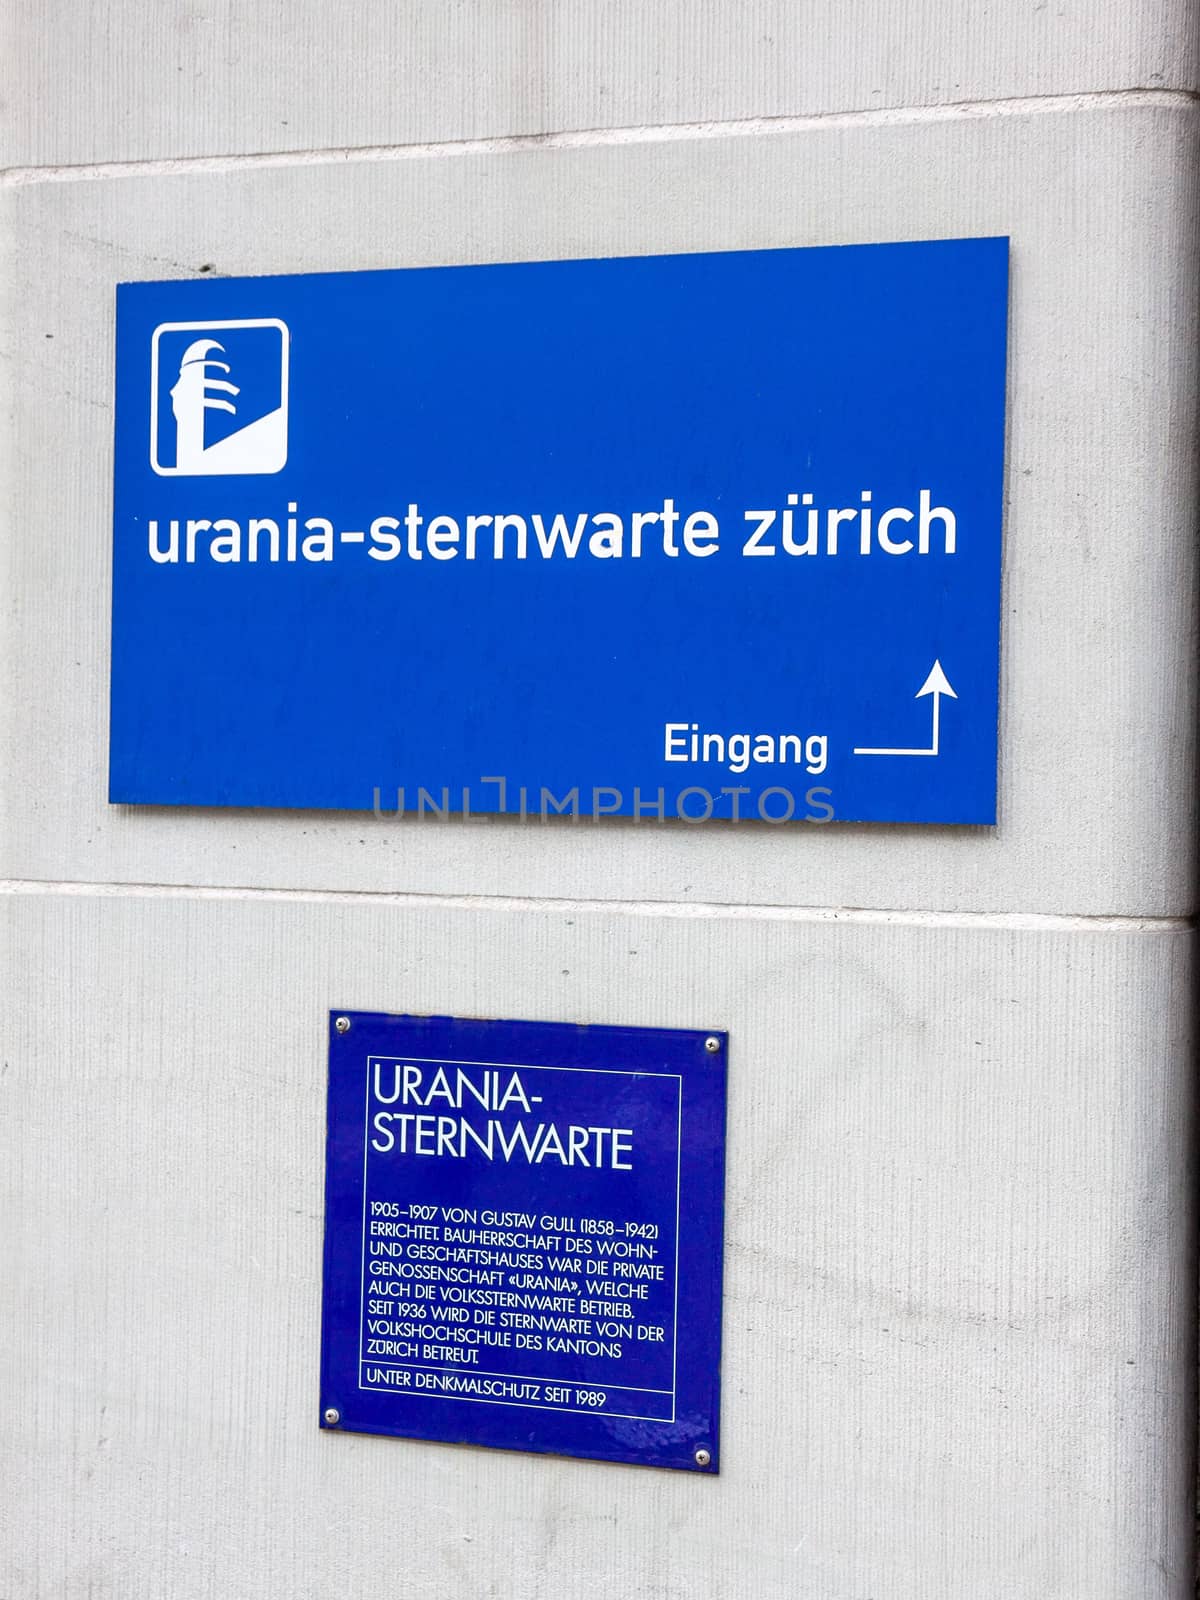 Urania observatory in Zurich by aldorado